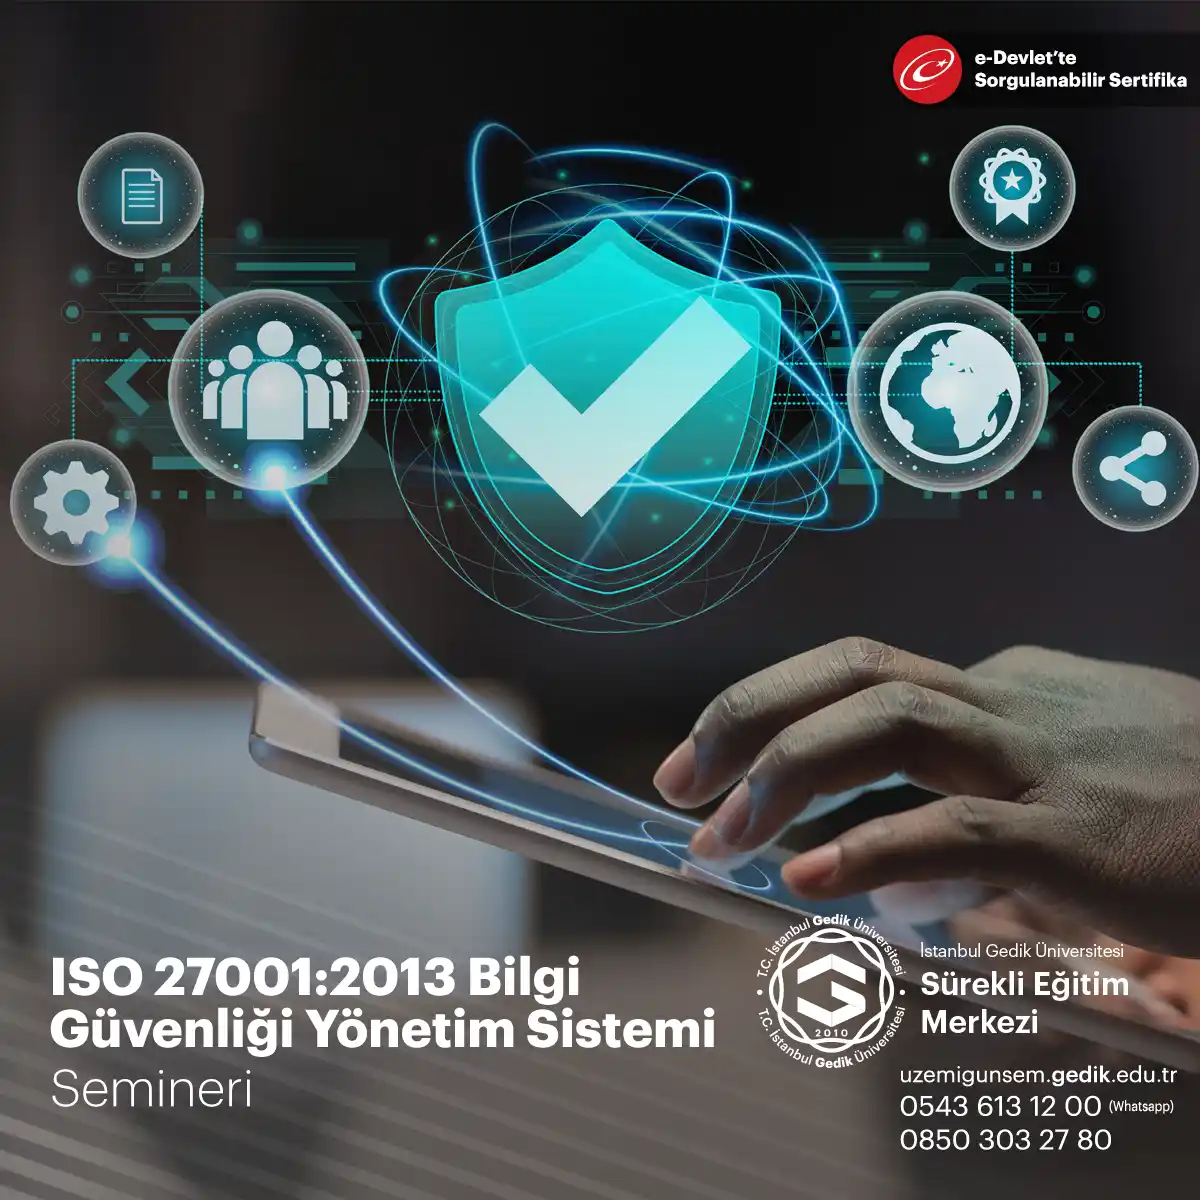 ISO 27001:2013 Bilgi Güvenliği Yönetim Sistemi Semineri, bilgi güvenliği yönetim sistemi kurmak veya mevcut yönetim sisteminin ISO 27001:2013 standardına uygun hale getirilmesi konusunda katılımcılara rehberlik etmek amacıyla düzenlenen bir seminerdir.